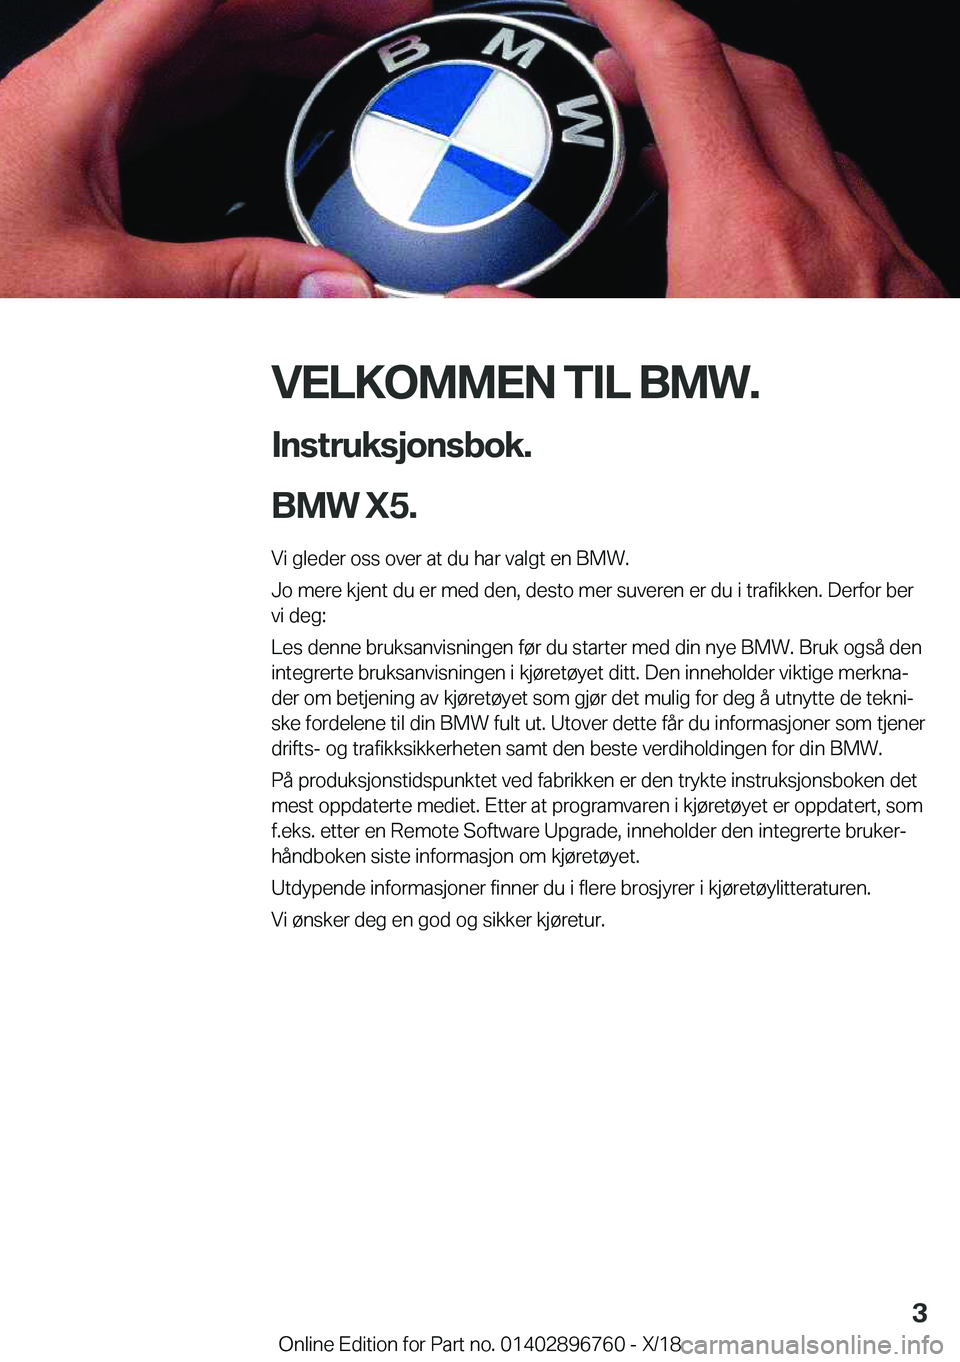 BMW X5 2019  InstruksjonsbØker (in Norwegian) �V�E�L�K�O�M�M�E�N��T�I�L��B�M�W�.�I�n�s�t�r�u�k�s�j�o�n�s�b�o�k�.
�B�M�W��X�5�.
�V�i��g�l�e�d�e�r��o�s�s��o�v�e�r��a�t��d�u��h�a�r��v�a�l�g�t��e�n��B�M�W�.
�J�o��m�e�r�e��k�j�e�n�t��d�